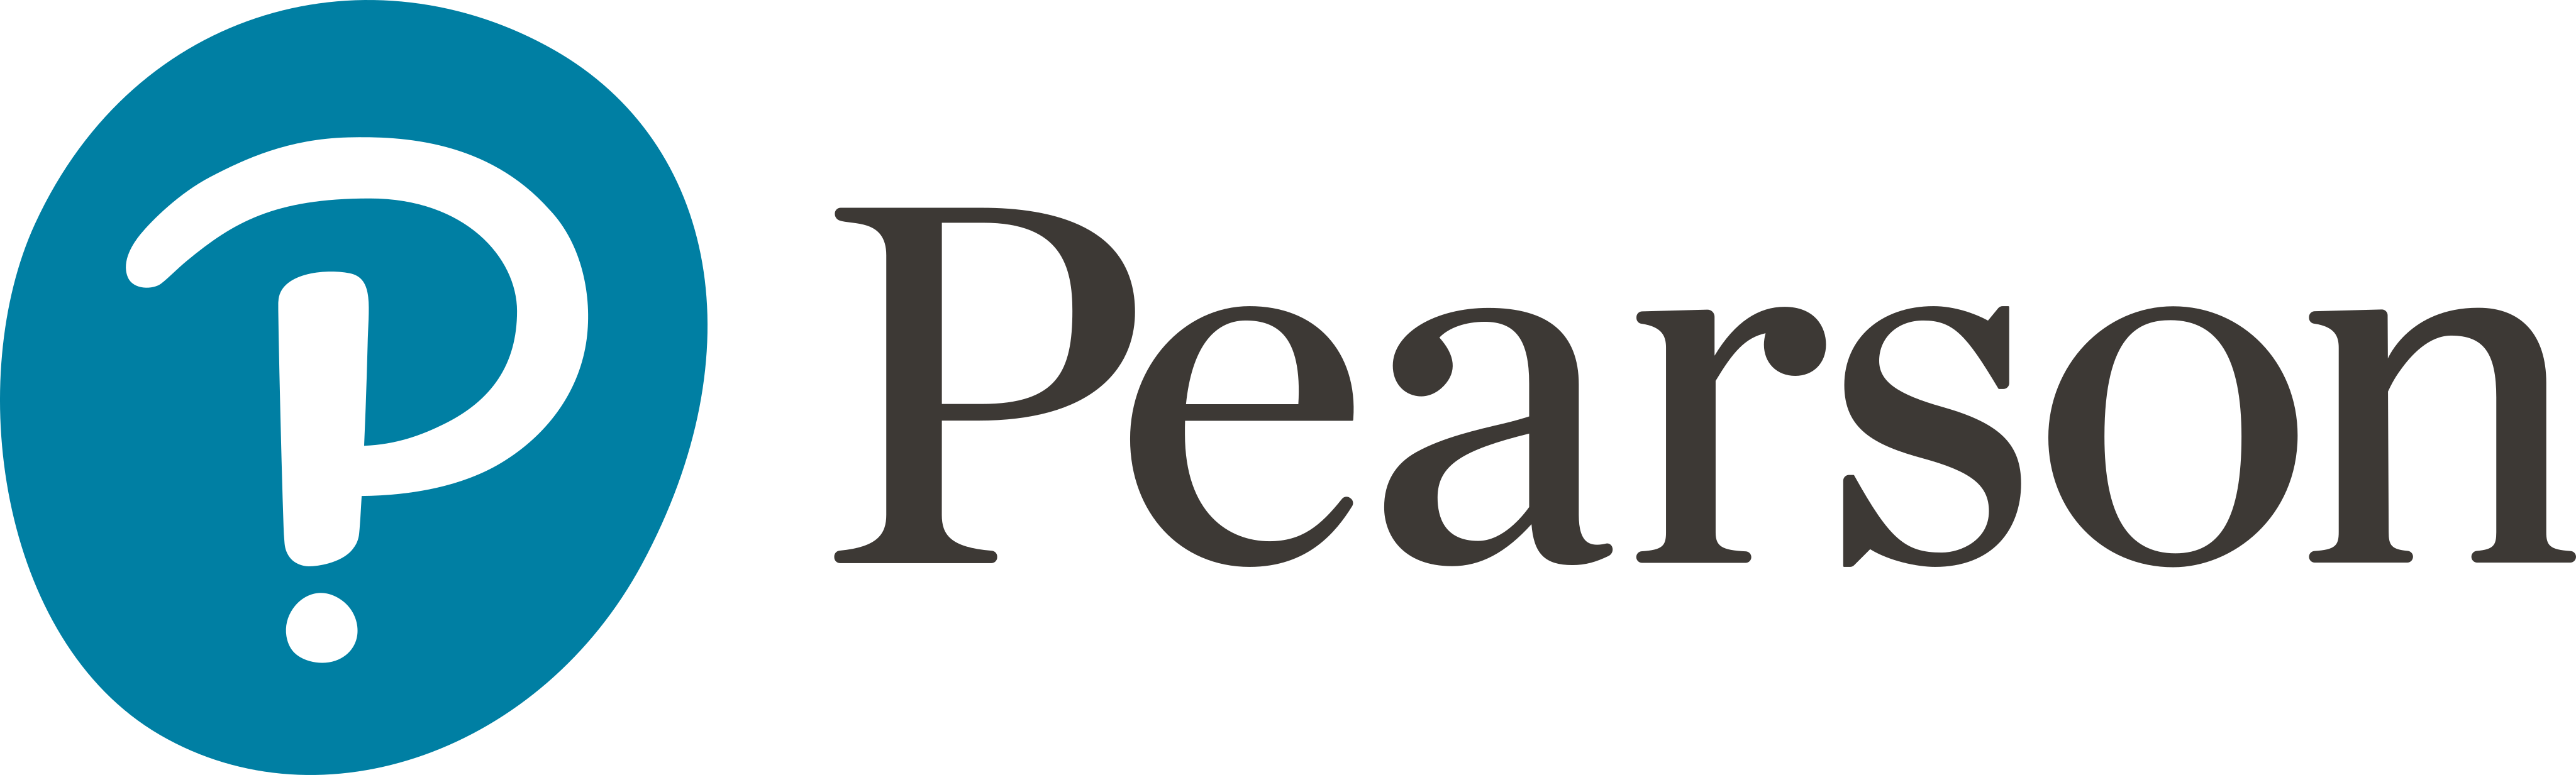 pearson logo - Pearson Logo